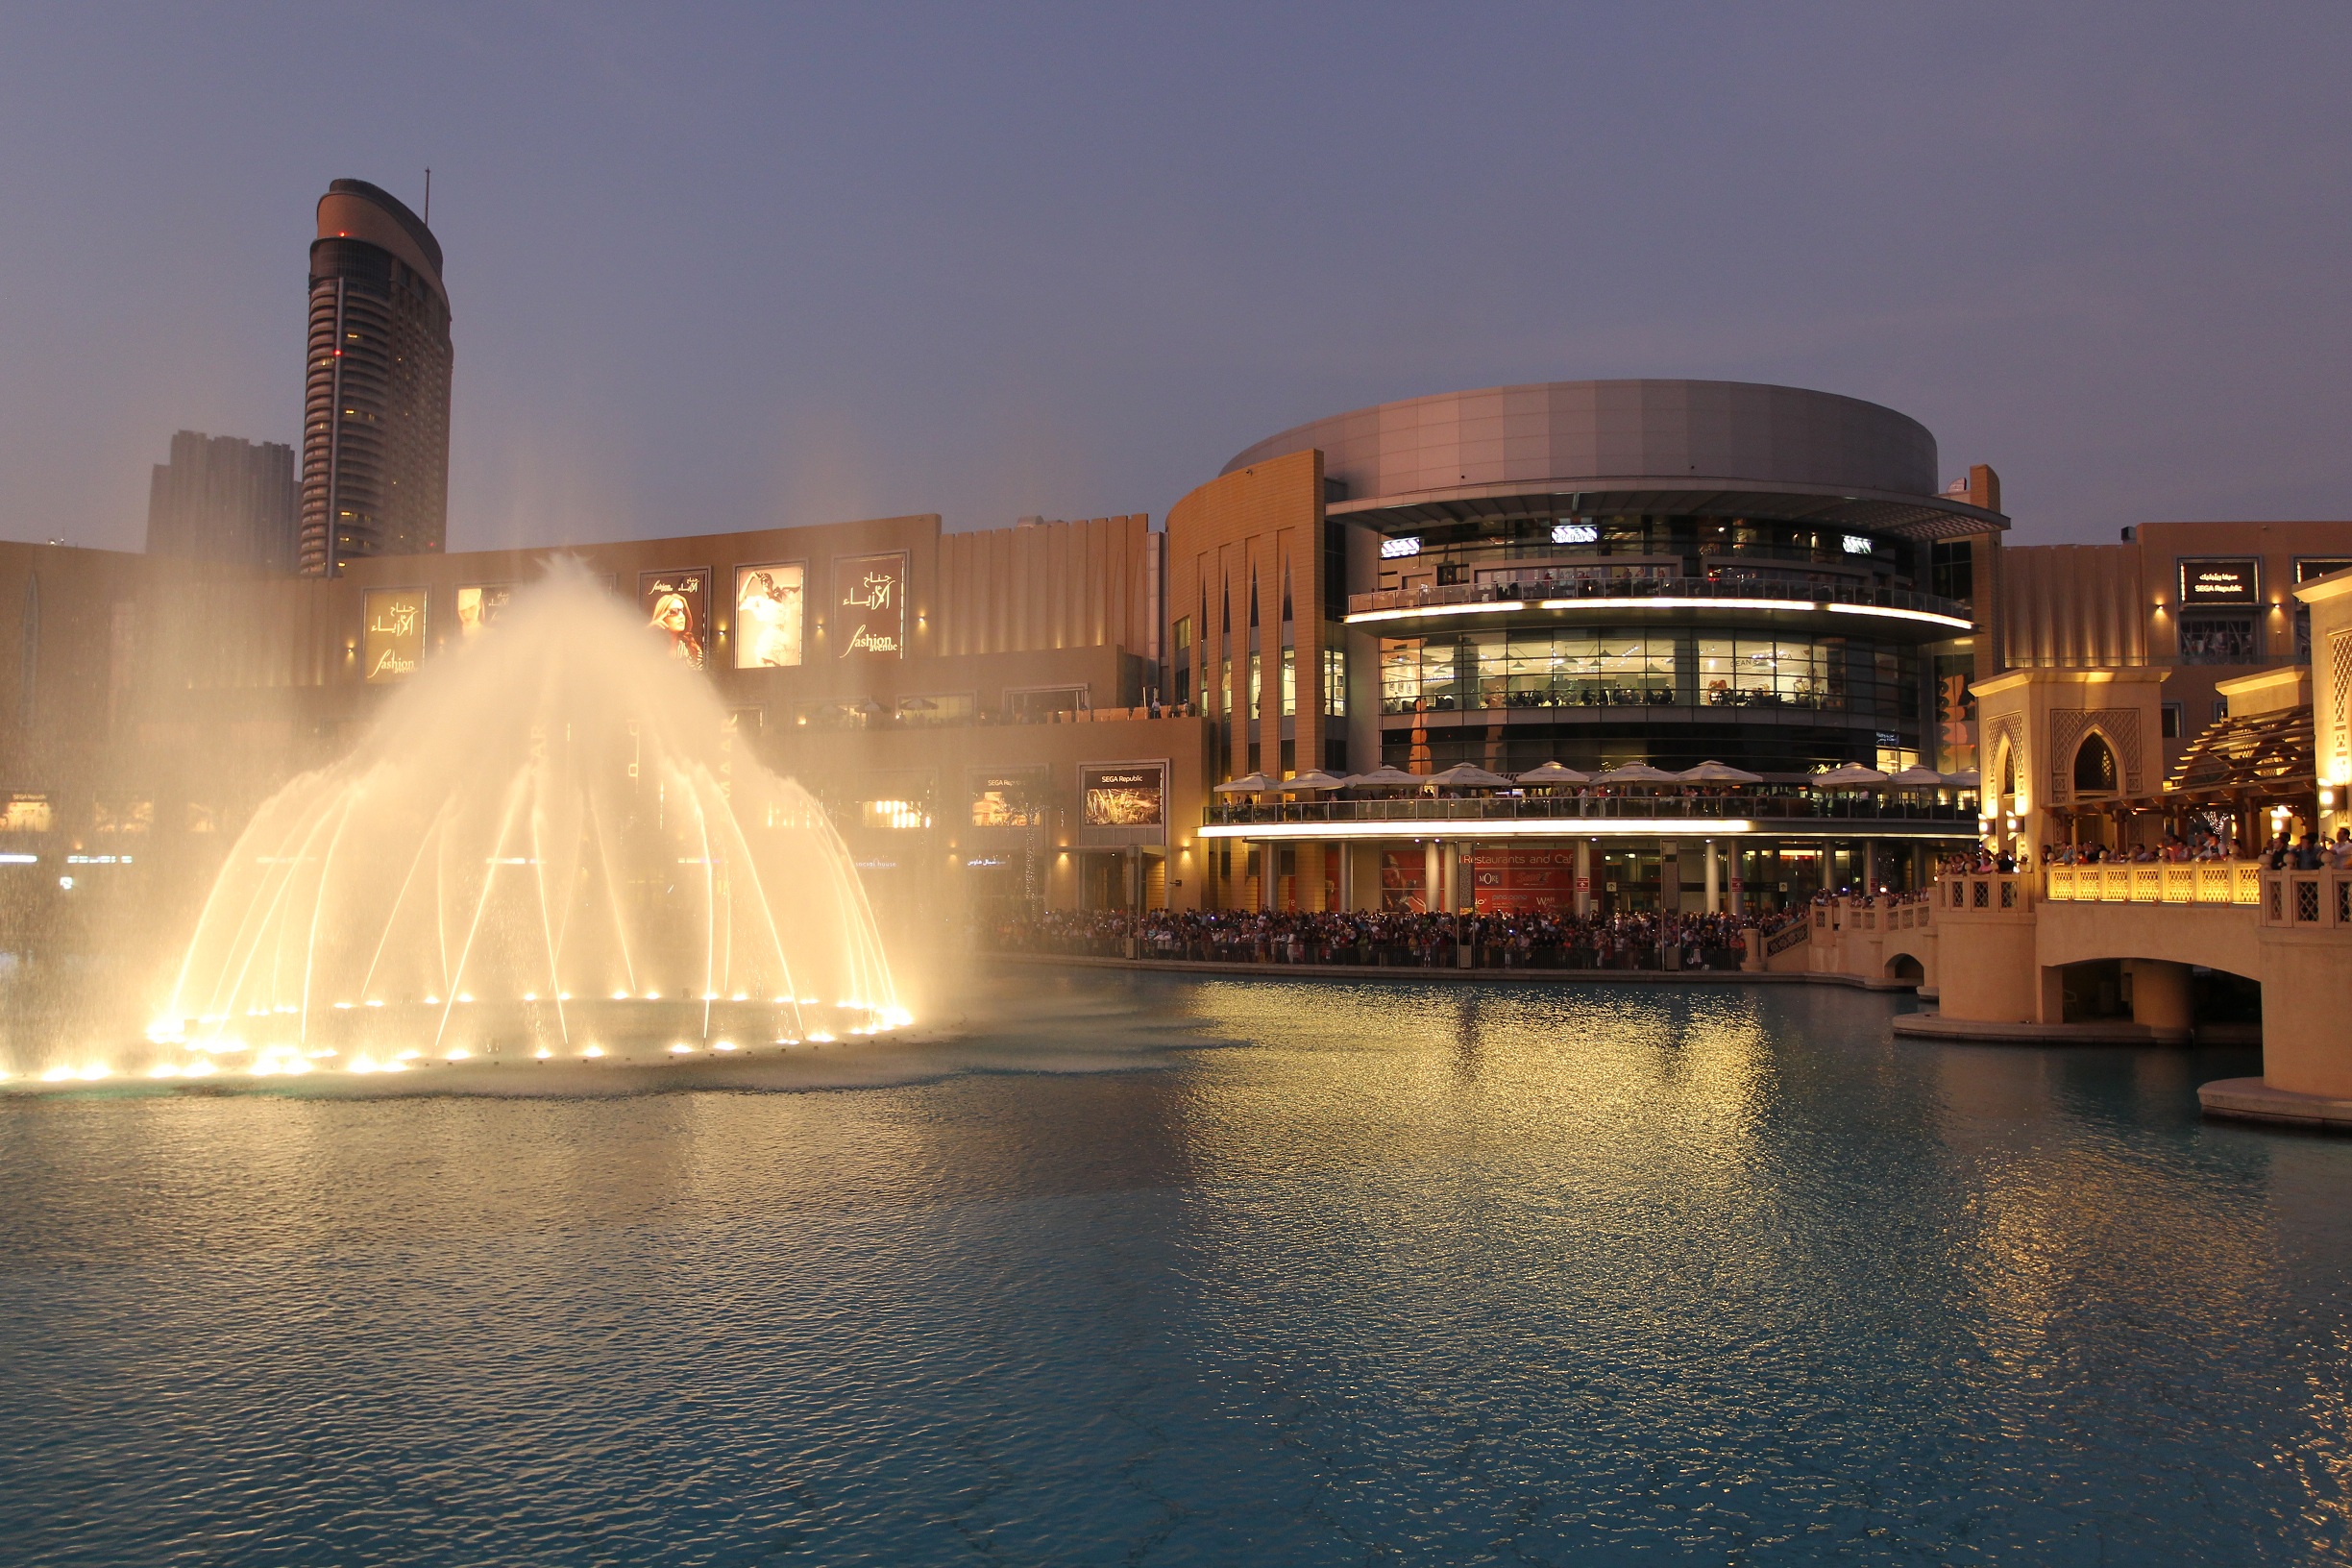 Dubai Mall Fountains show